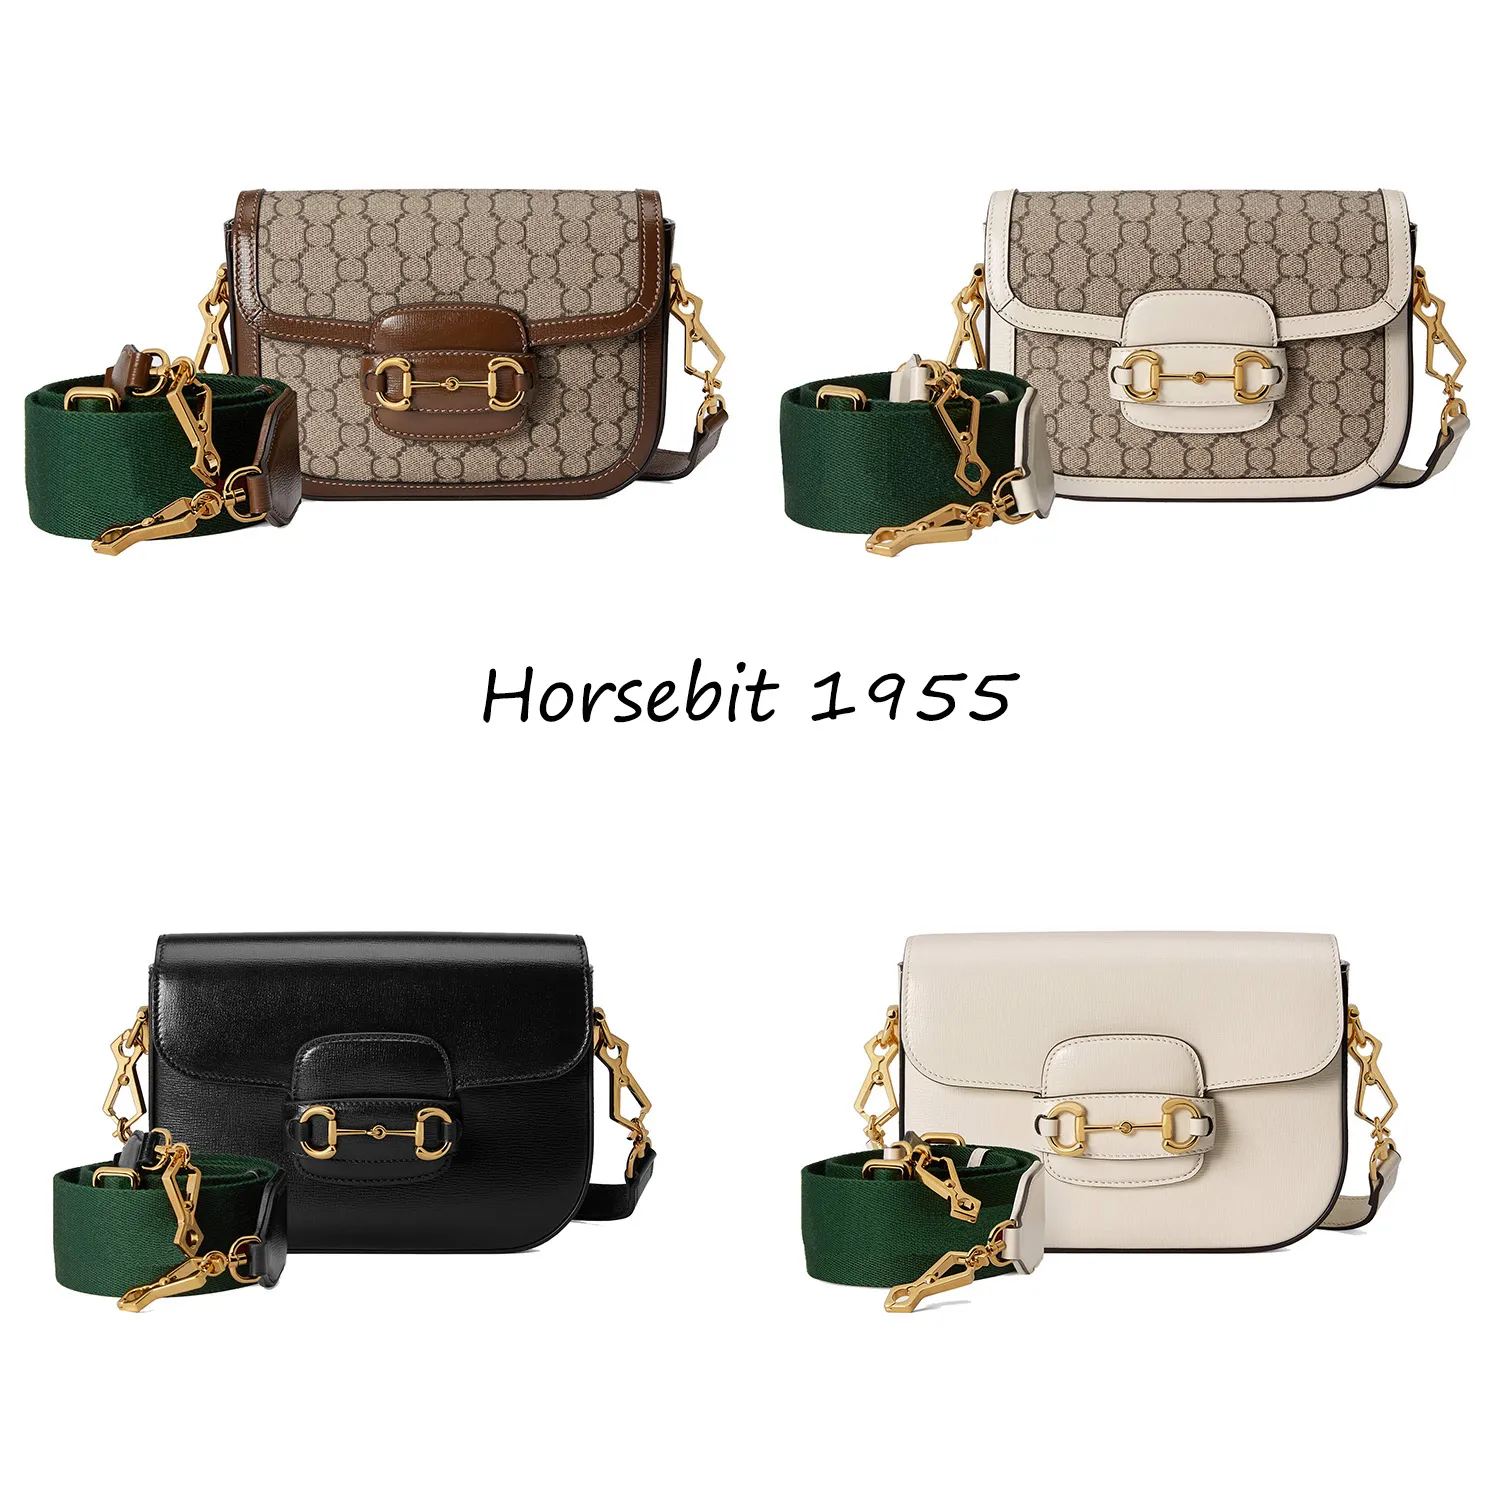 الأكياس المسائية مصممة فاخرة العلامة التجارية أزياء Horsebit 1955 سلسلة الكتف حقيبة ميني كروسودي حقيبة (مع أحزمة الكتف قابلة للفصل)